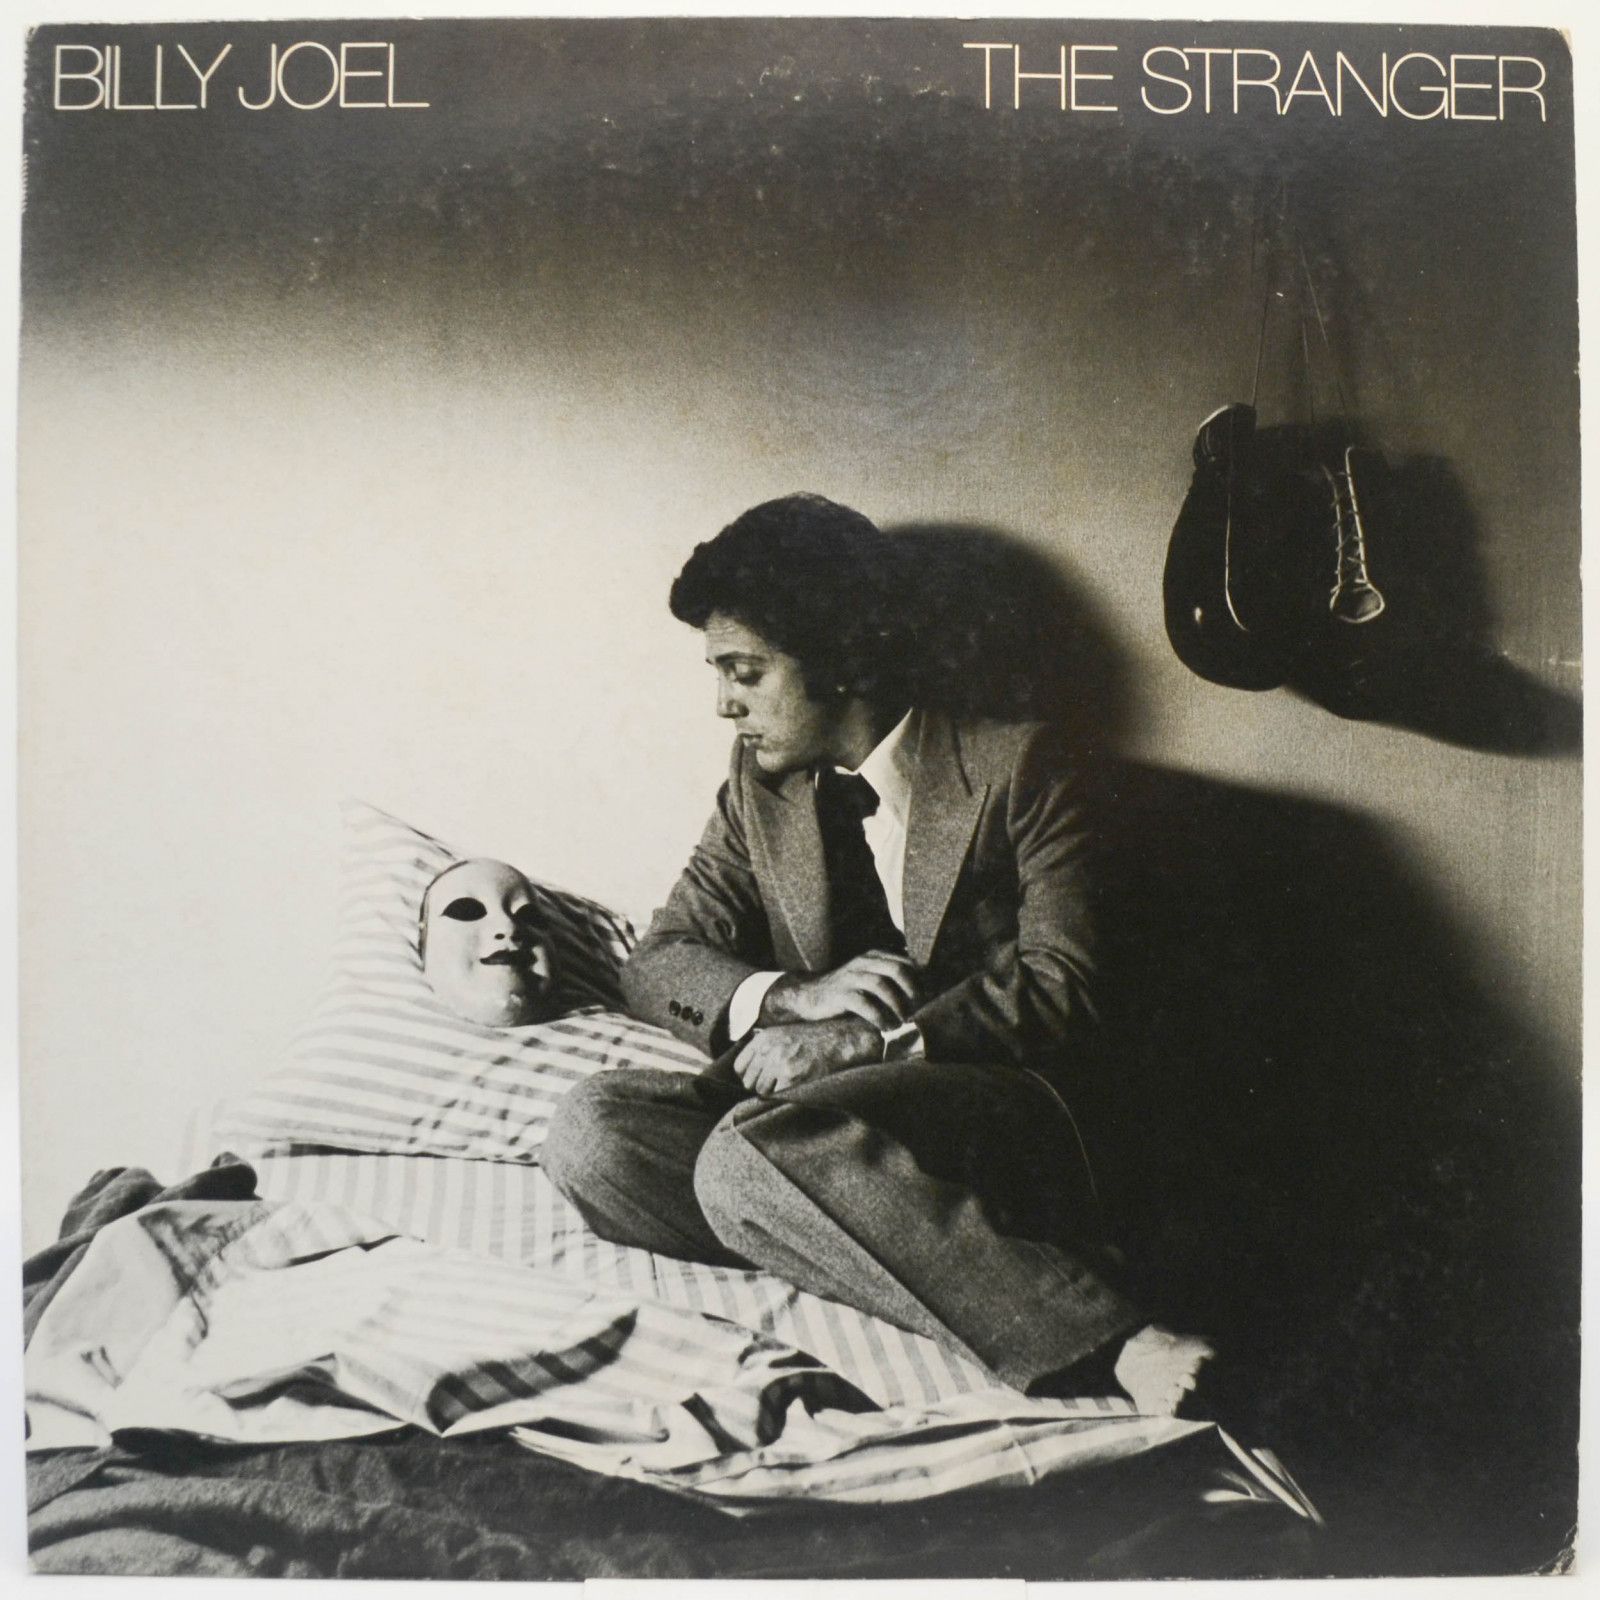 Billy Joel — The Stranger, 1978